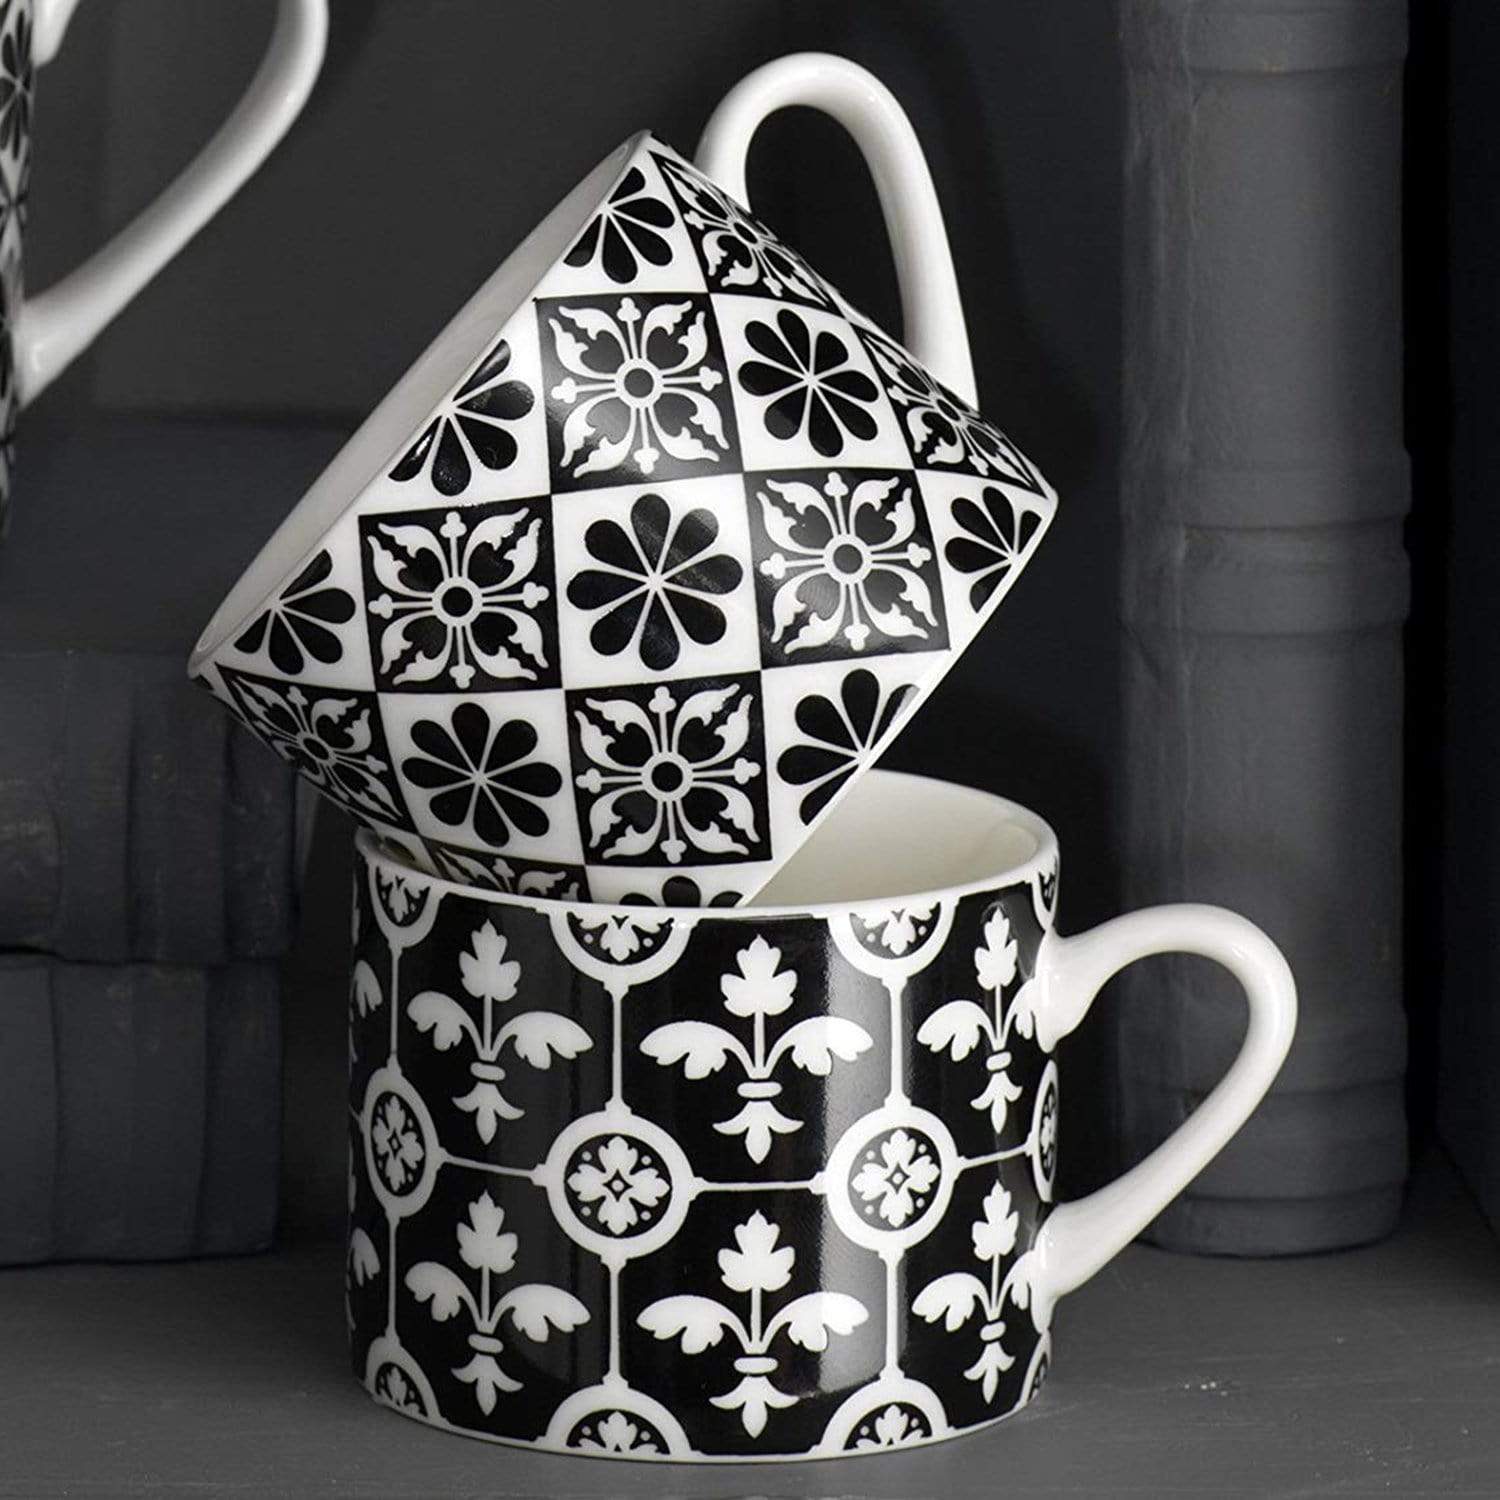 Creative Tops Victoria and Albert Encaustic Tile Espresso Mug - Set of 4 - 5174576 - Jashanmal Home